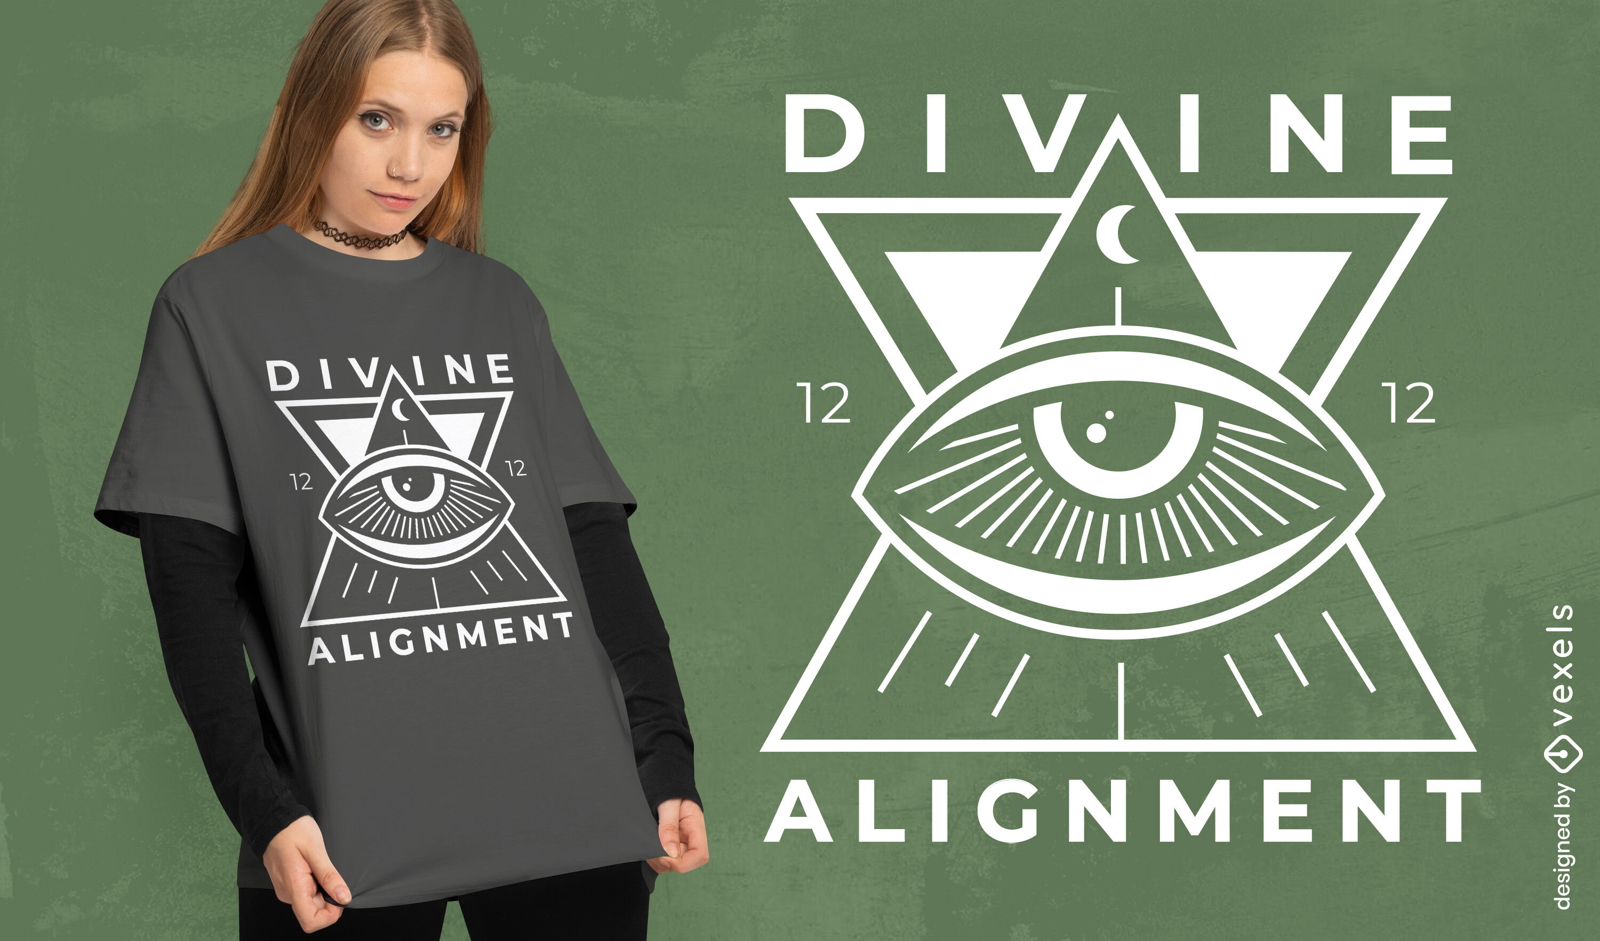 Divine alignment t-shirt design